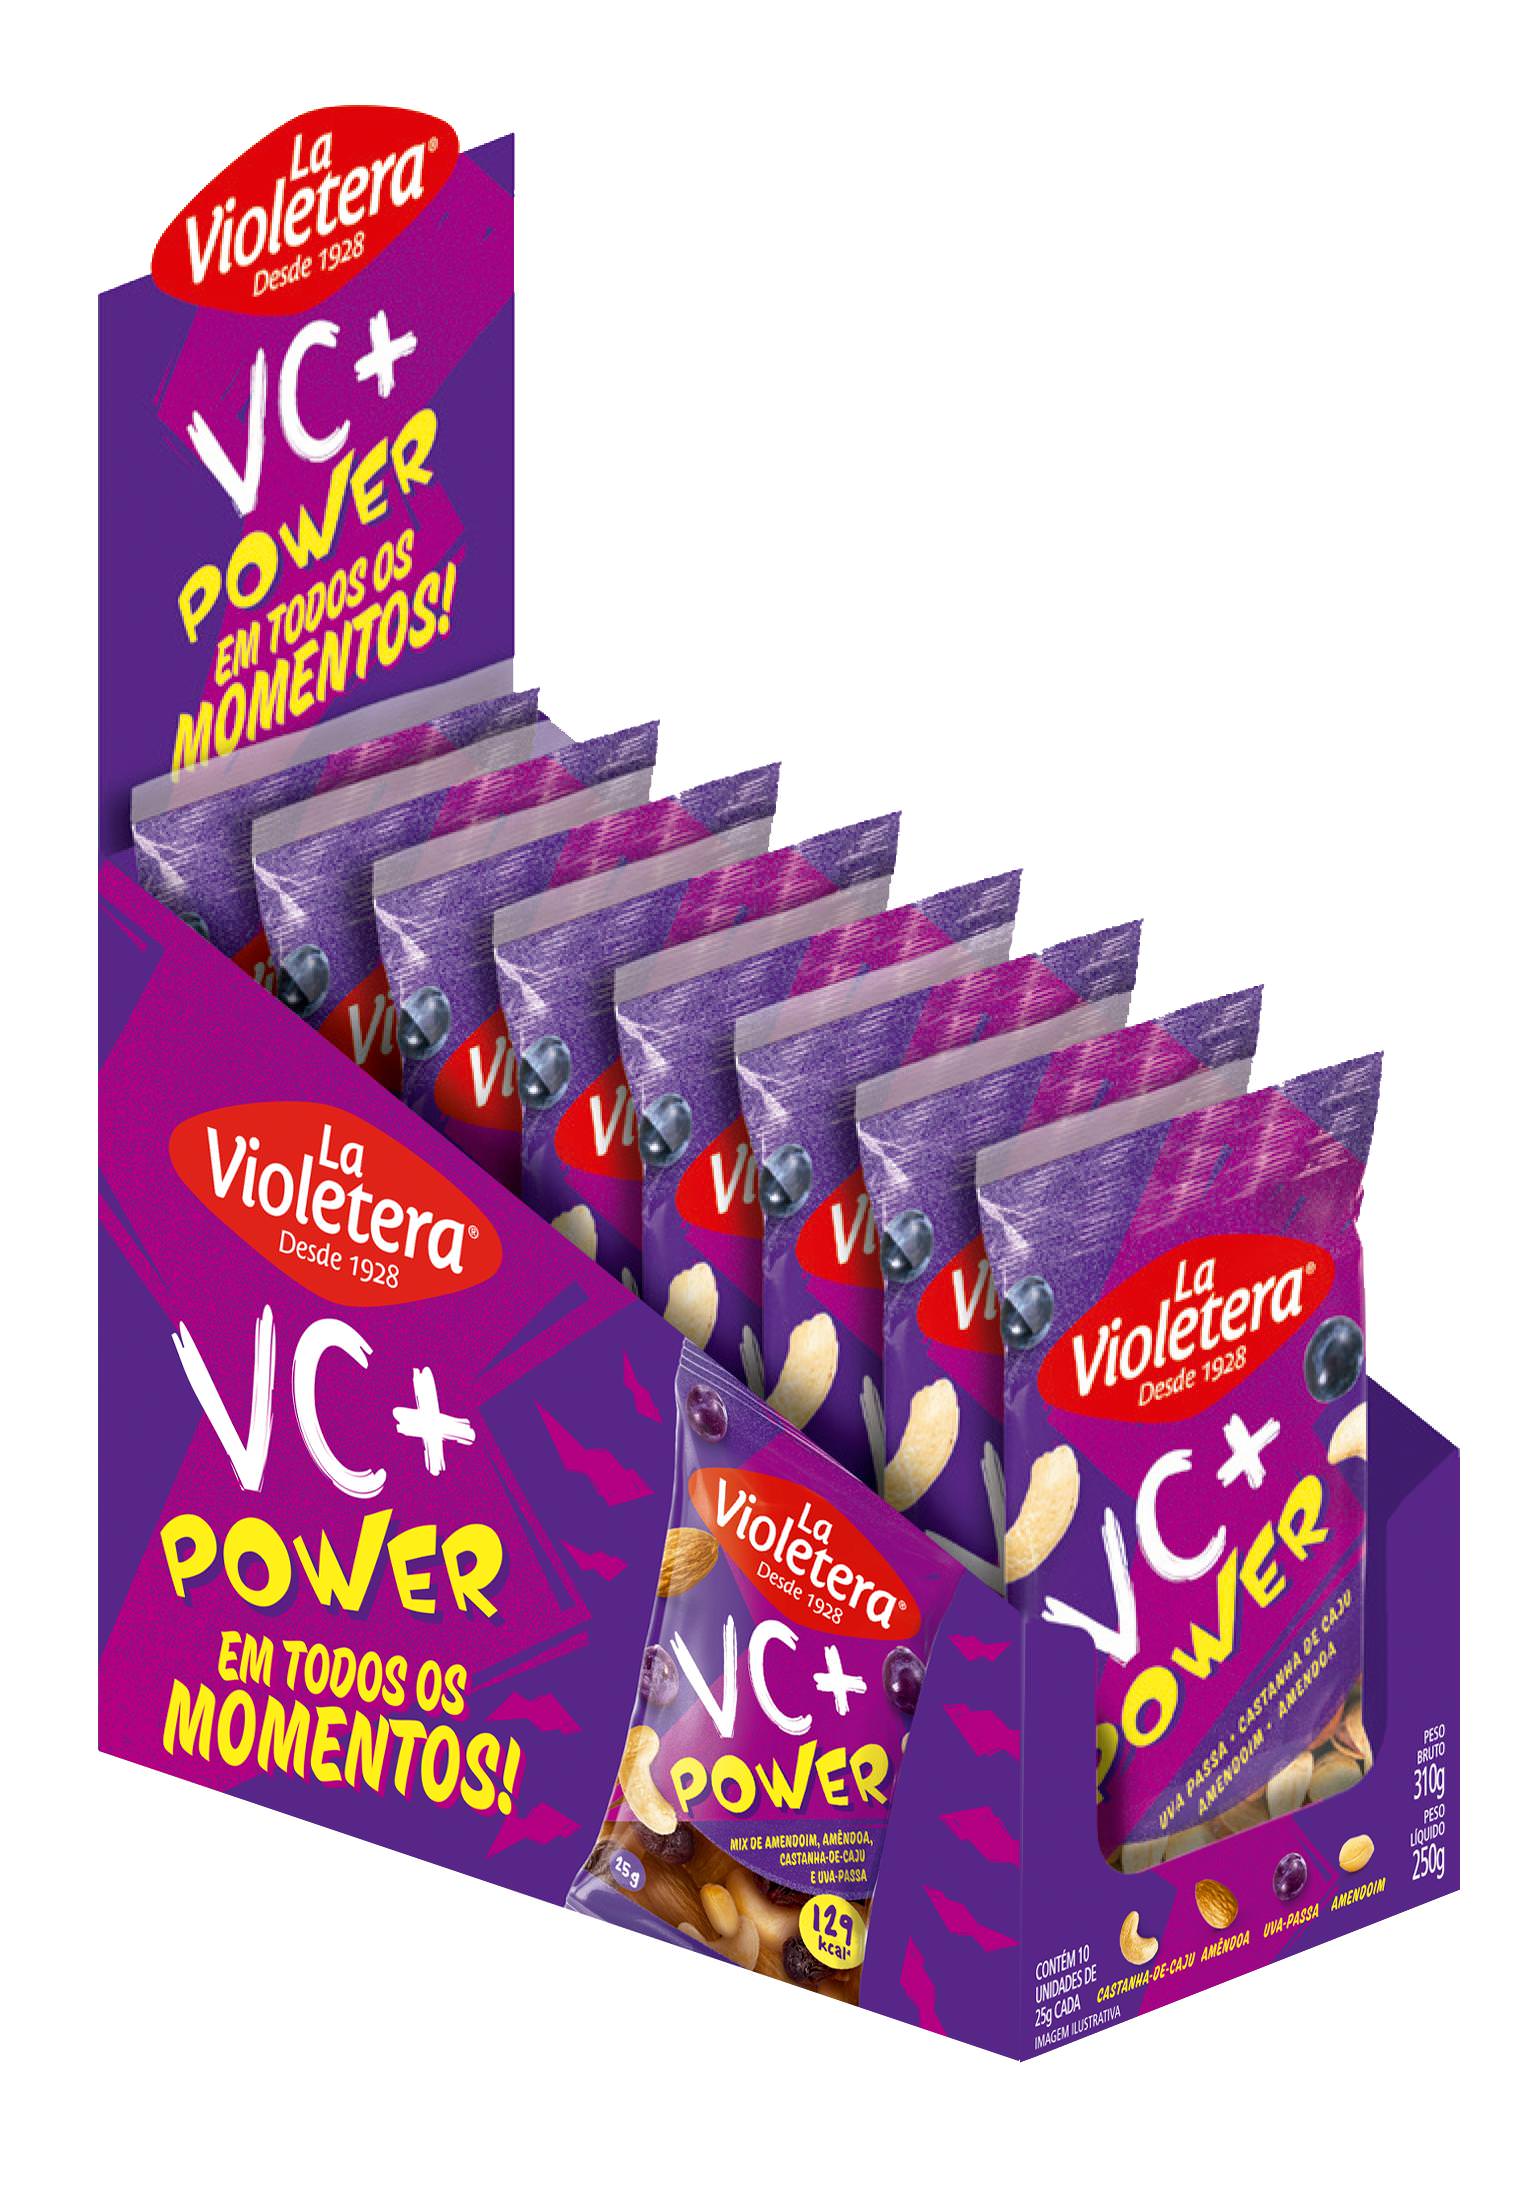 La Violetera projeta faturamento de R$ 4 milhões com snacks saudáveis até o final de 2018